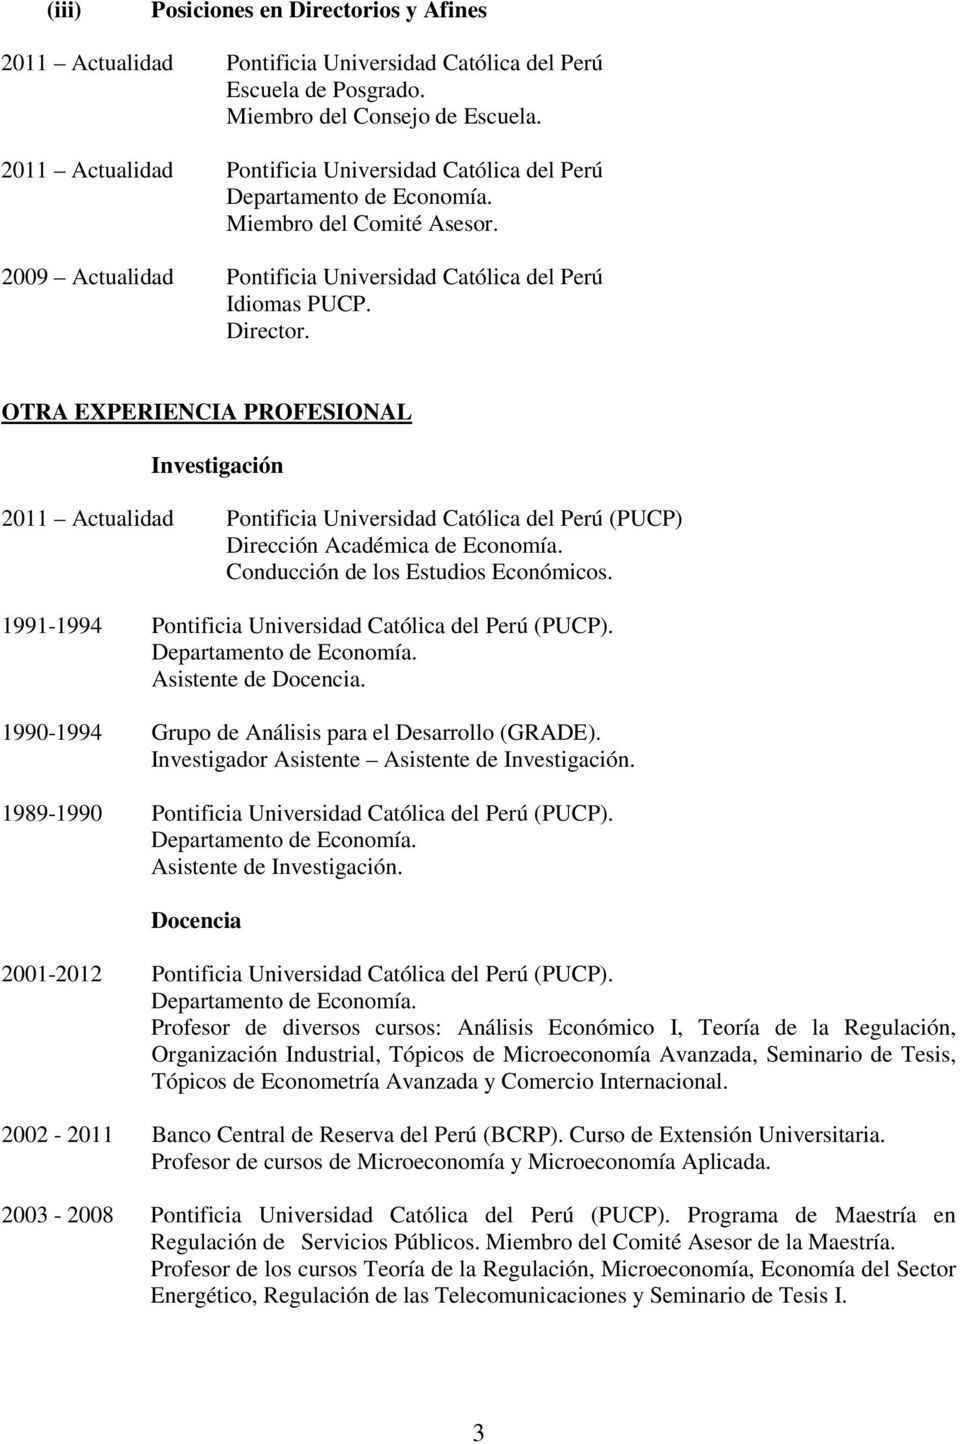 OTRA EXPERIENCIA PROFESIONAL Investigación 2011 Actualidad Pontificia Universidad Católica del Perú (PUCP) Dirección Académica de Economía. Conducción de los Estudios Económicos.